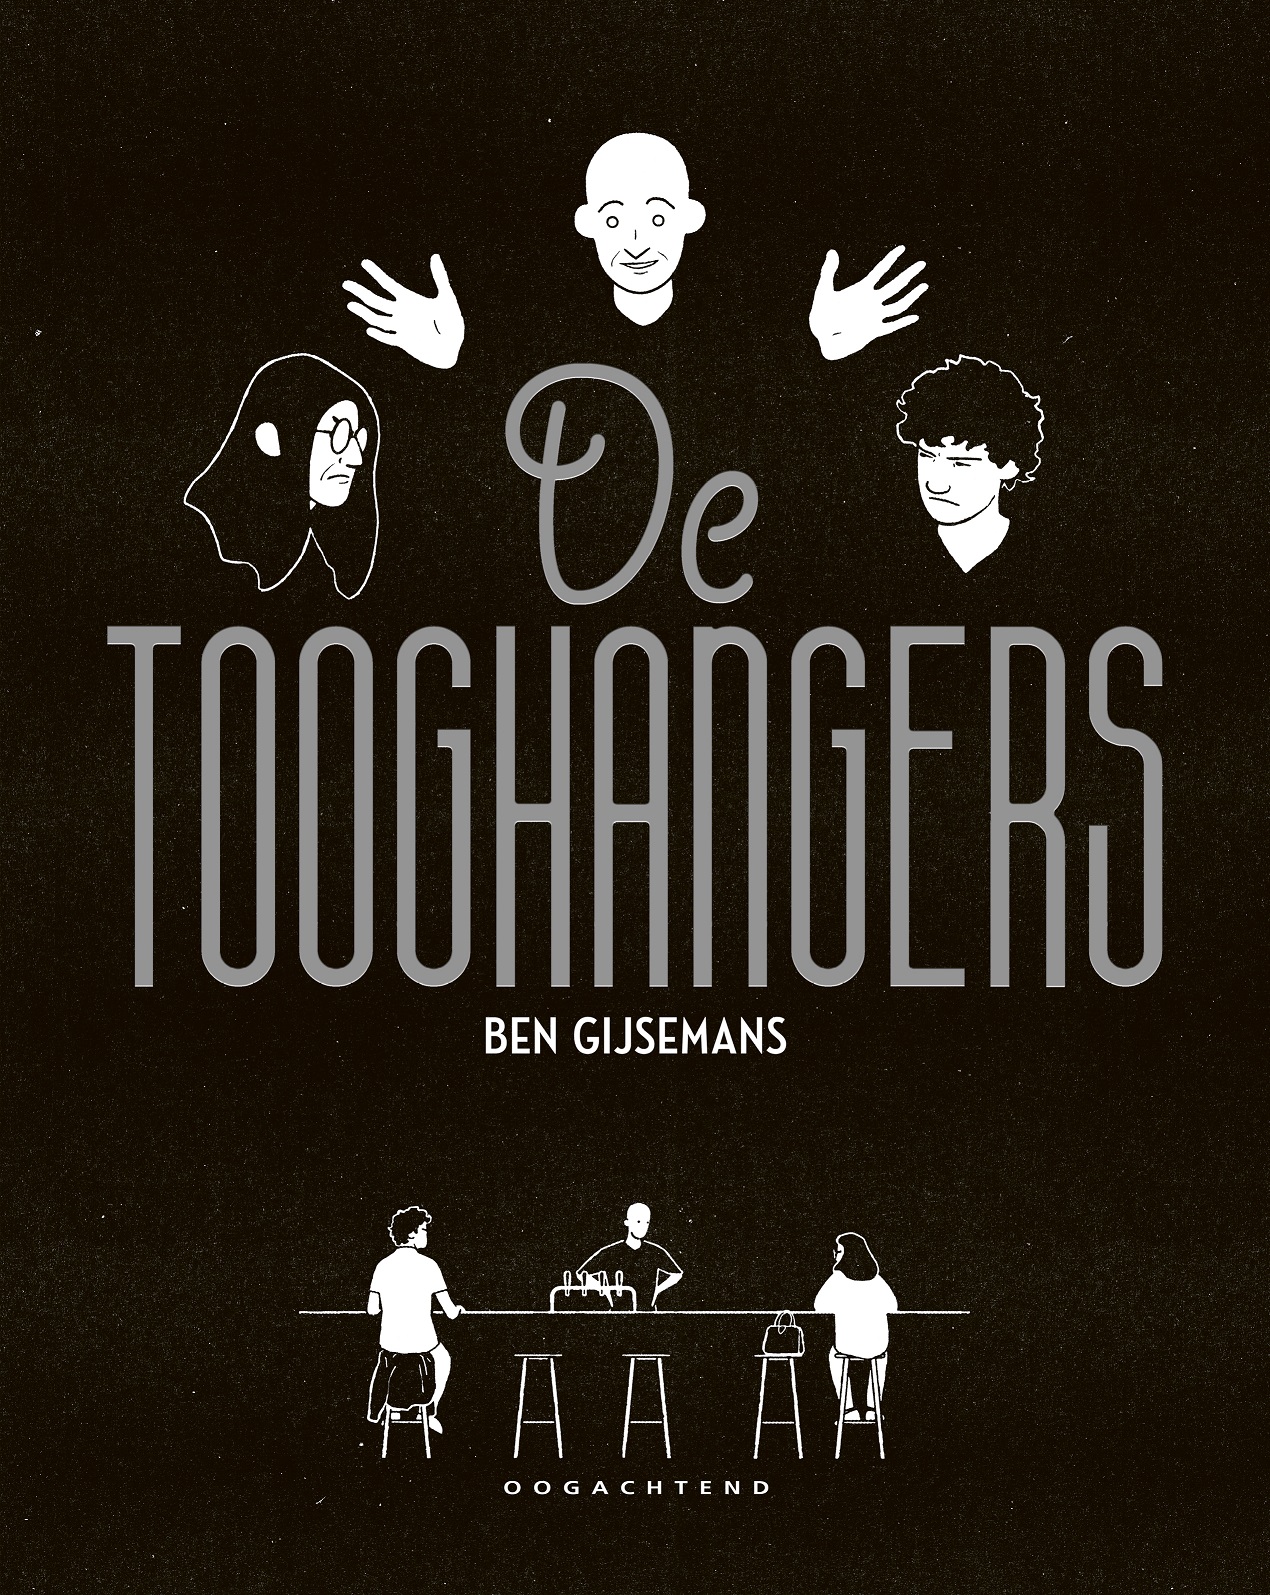 Tooghangers